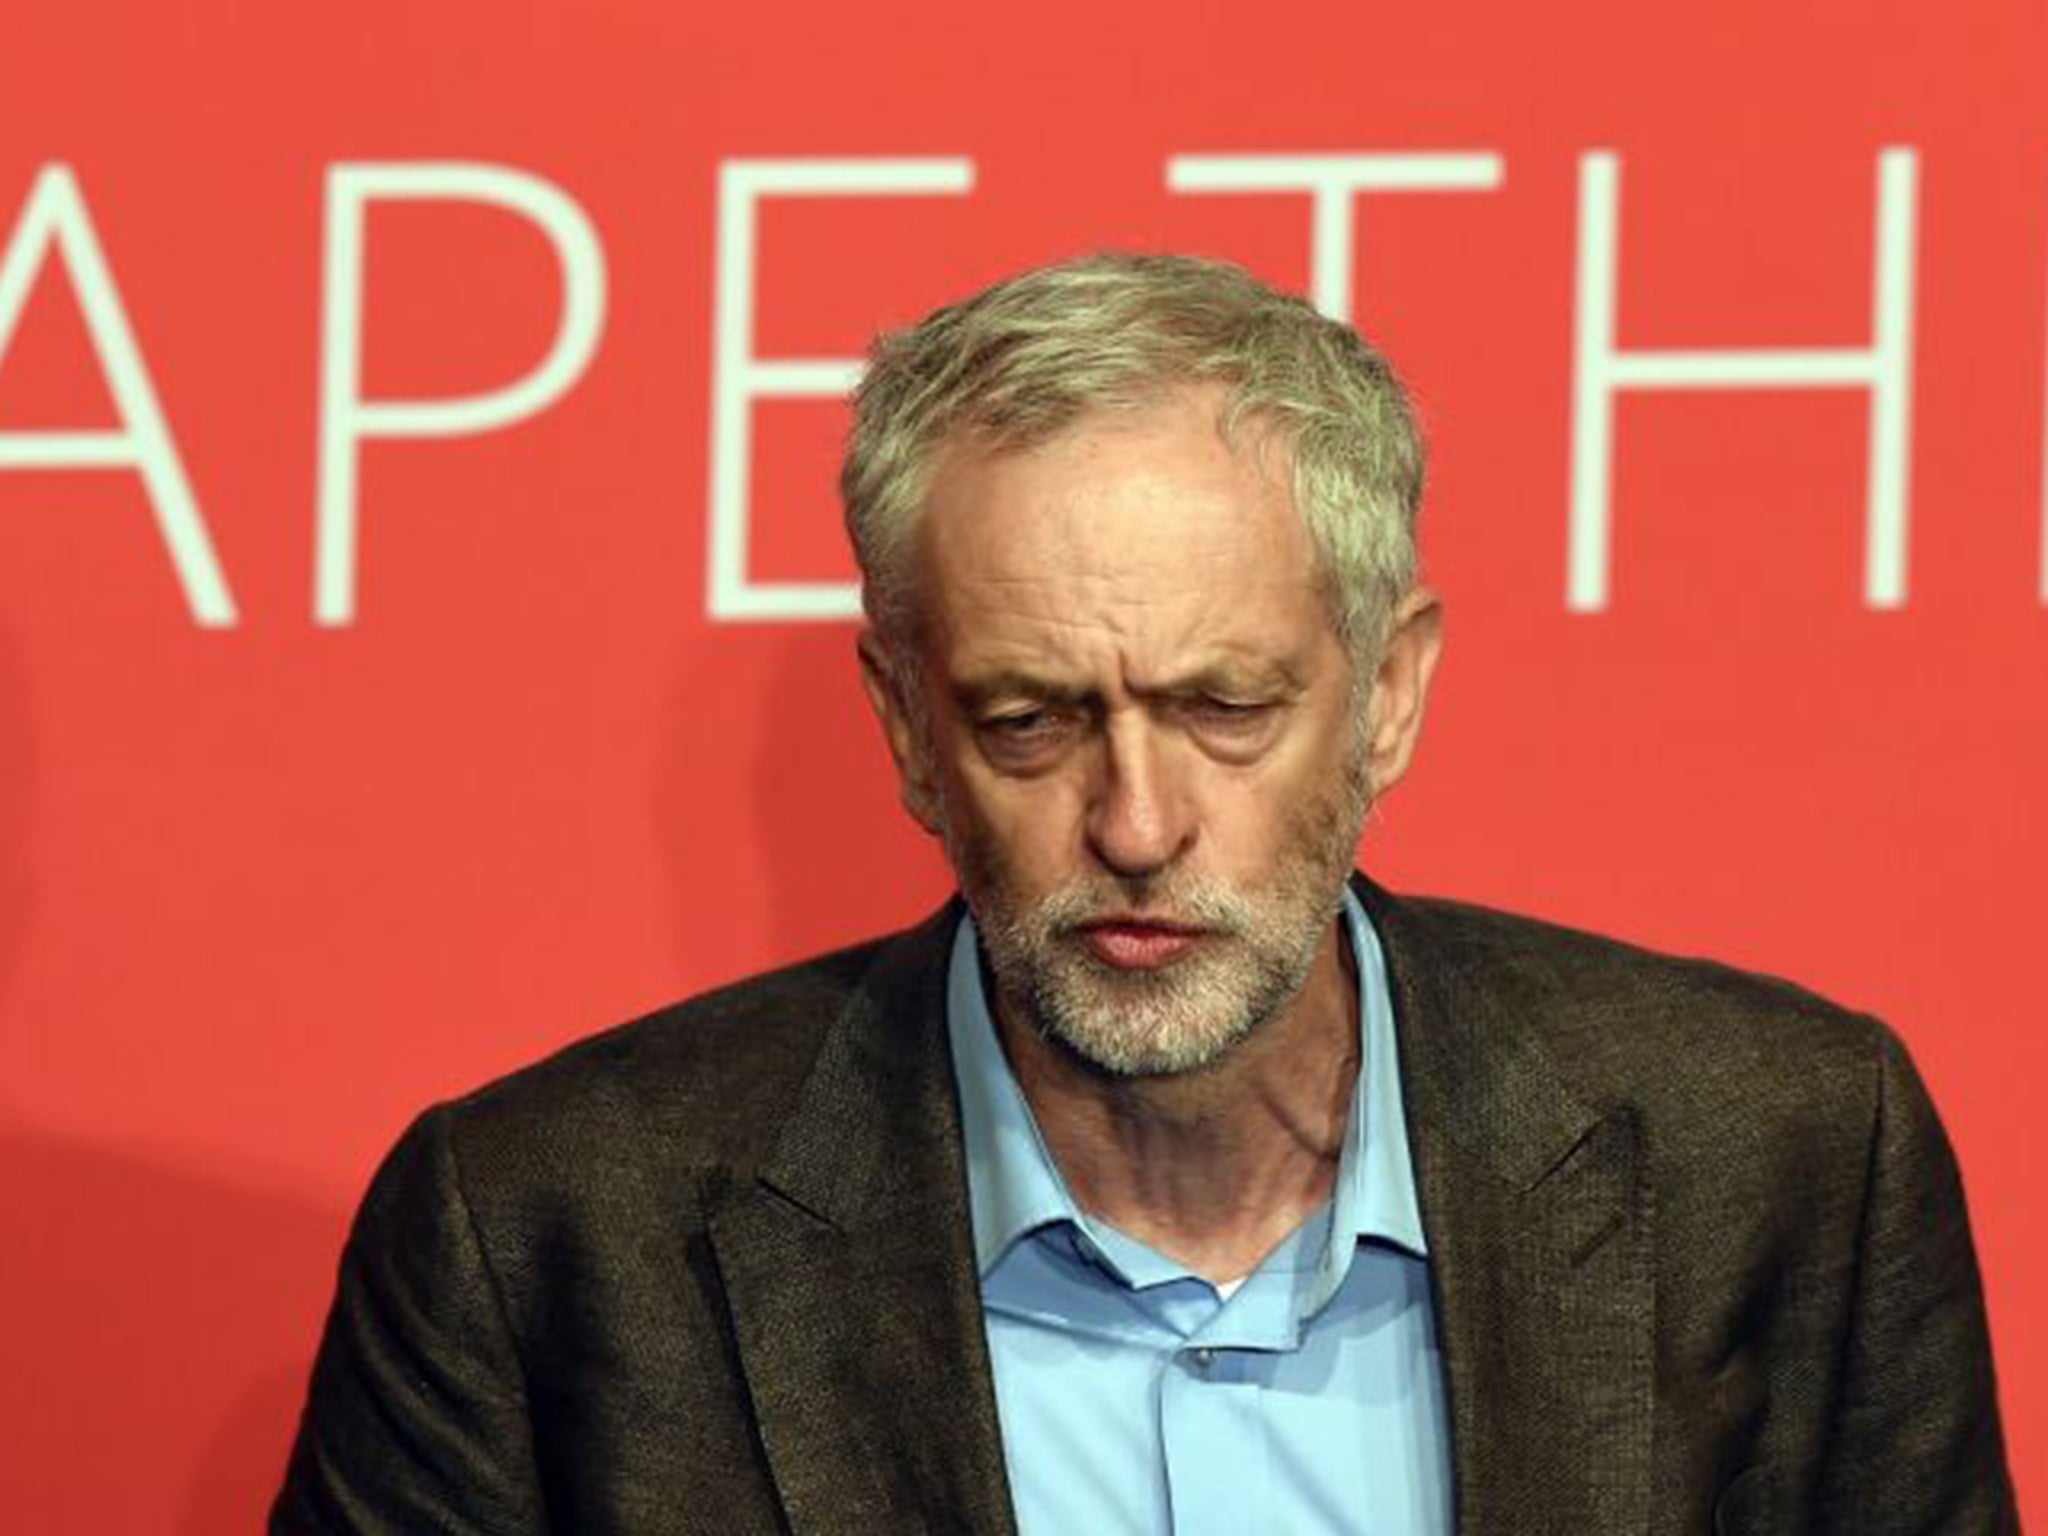 Jeremy Corbyn speaking in Warrington on Saturday